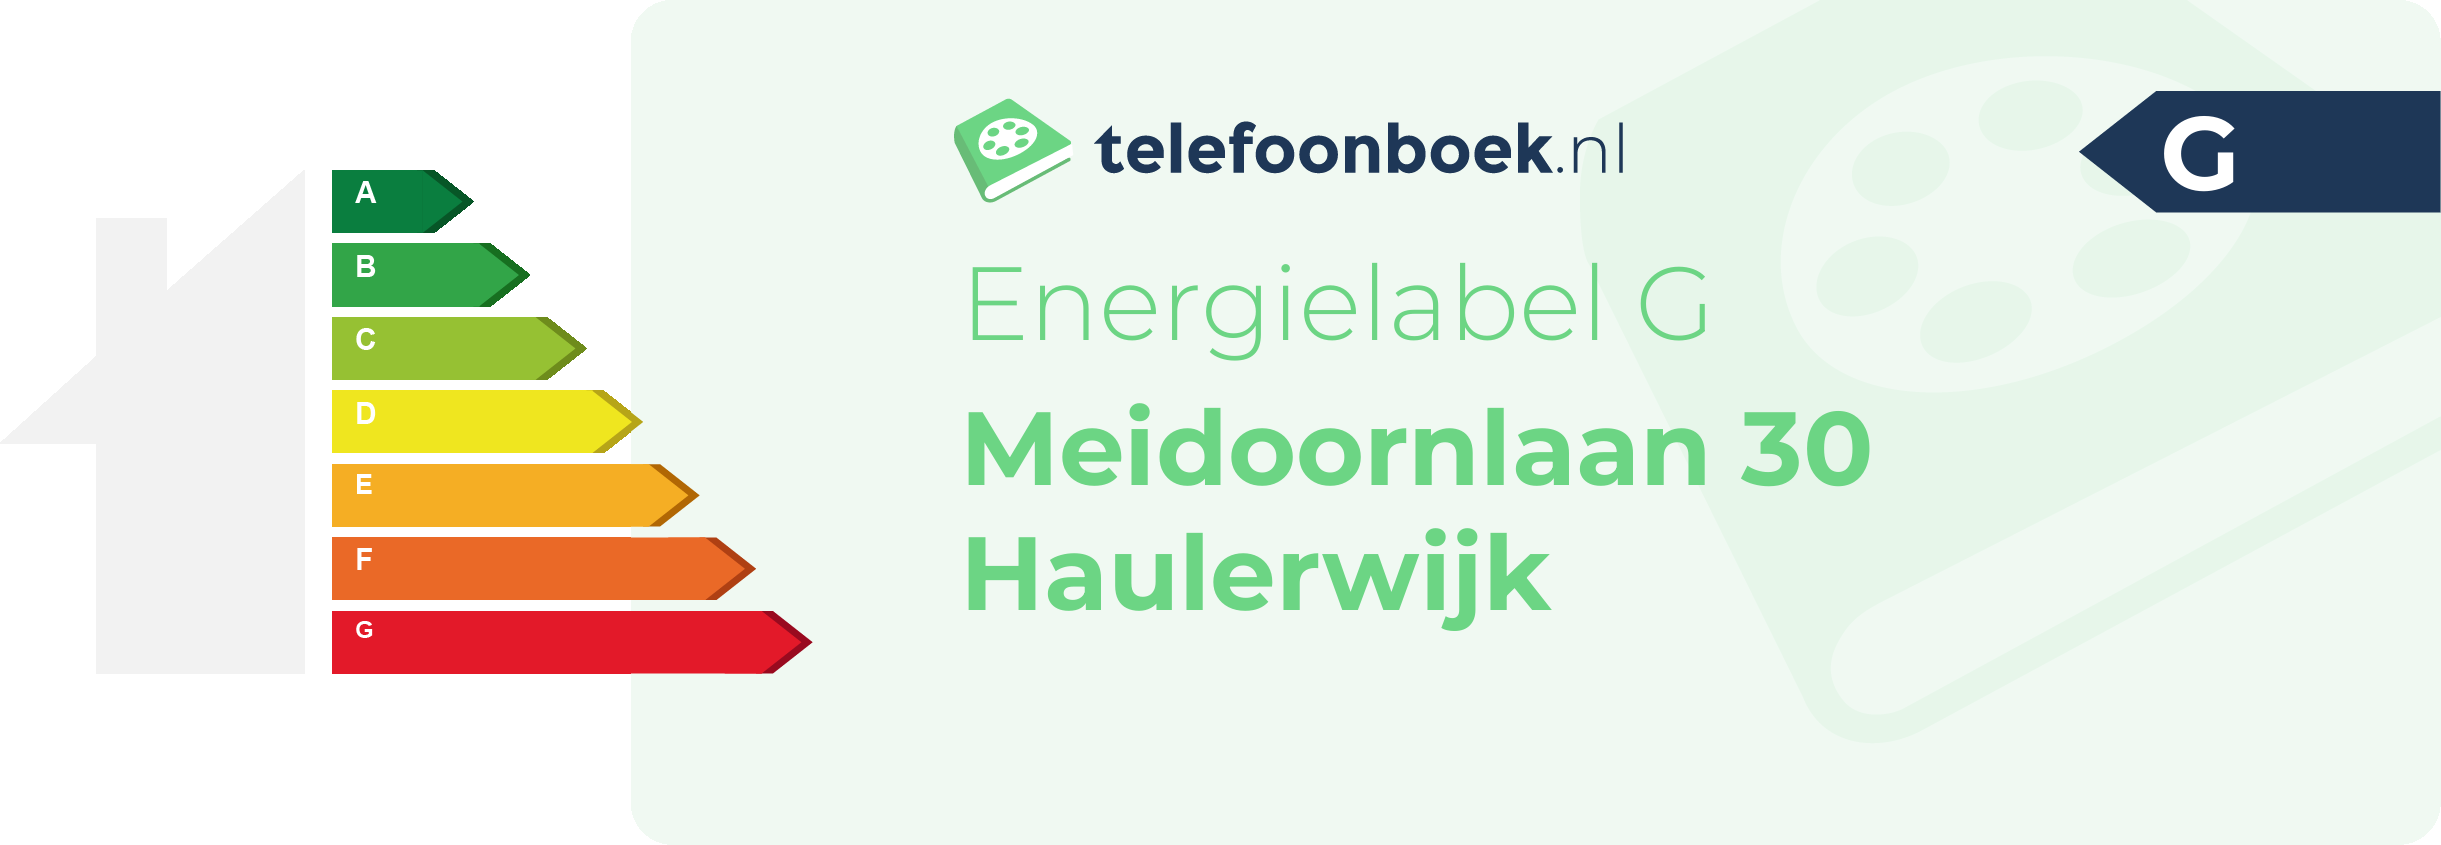 Energielabel Meidoornlaan 30 Haulerwijk